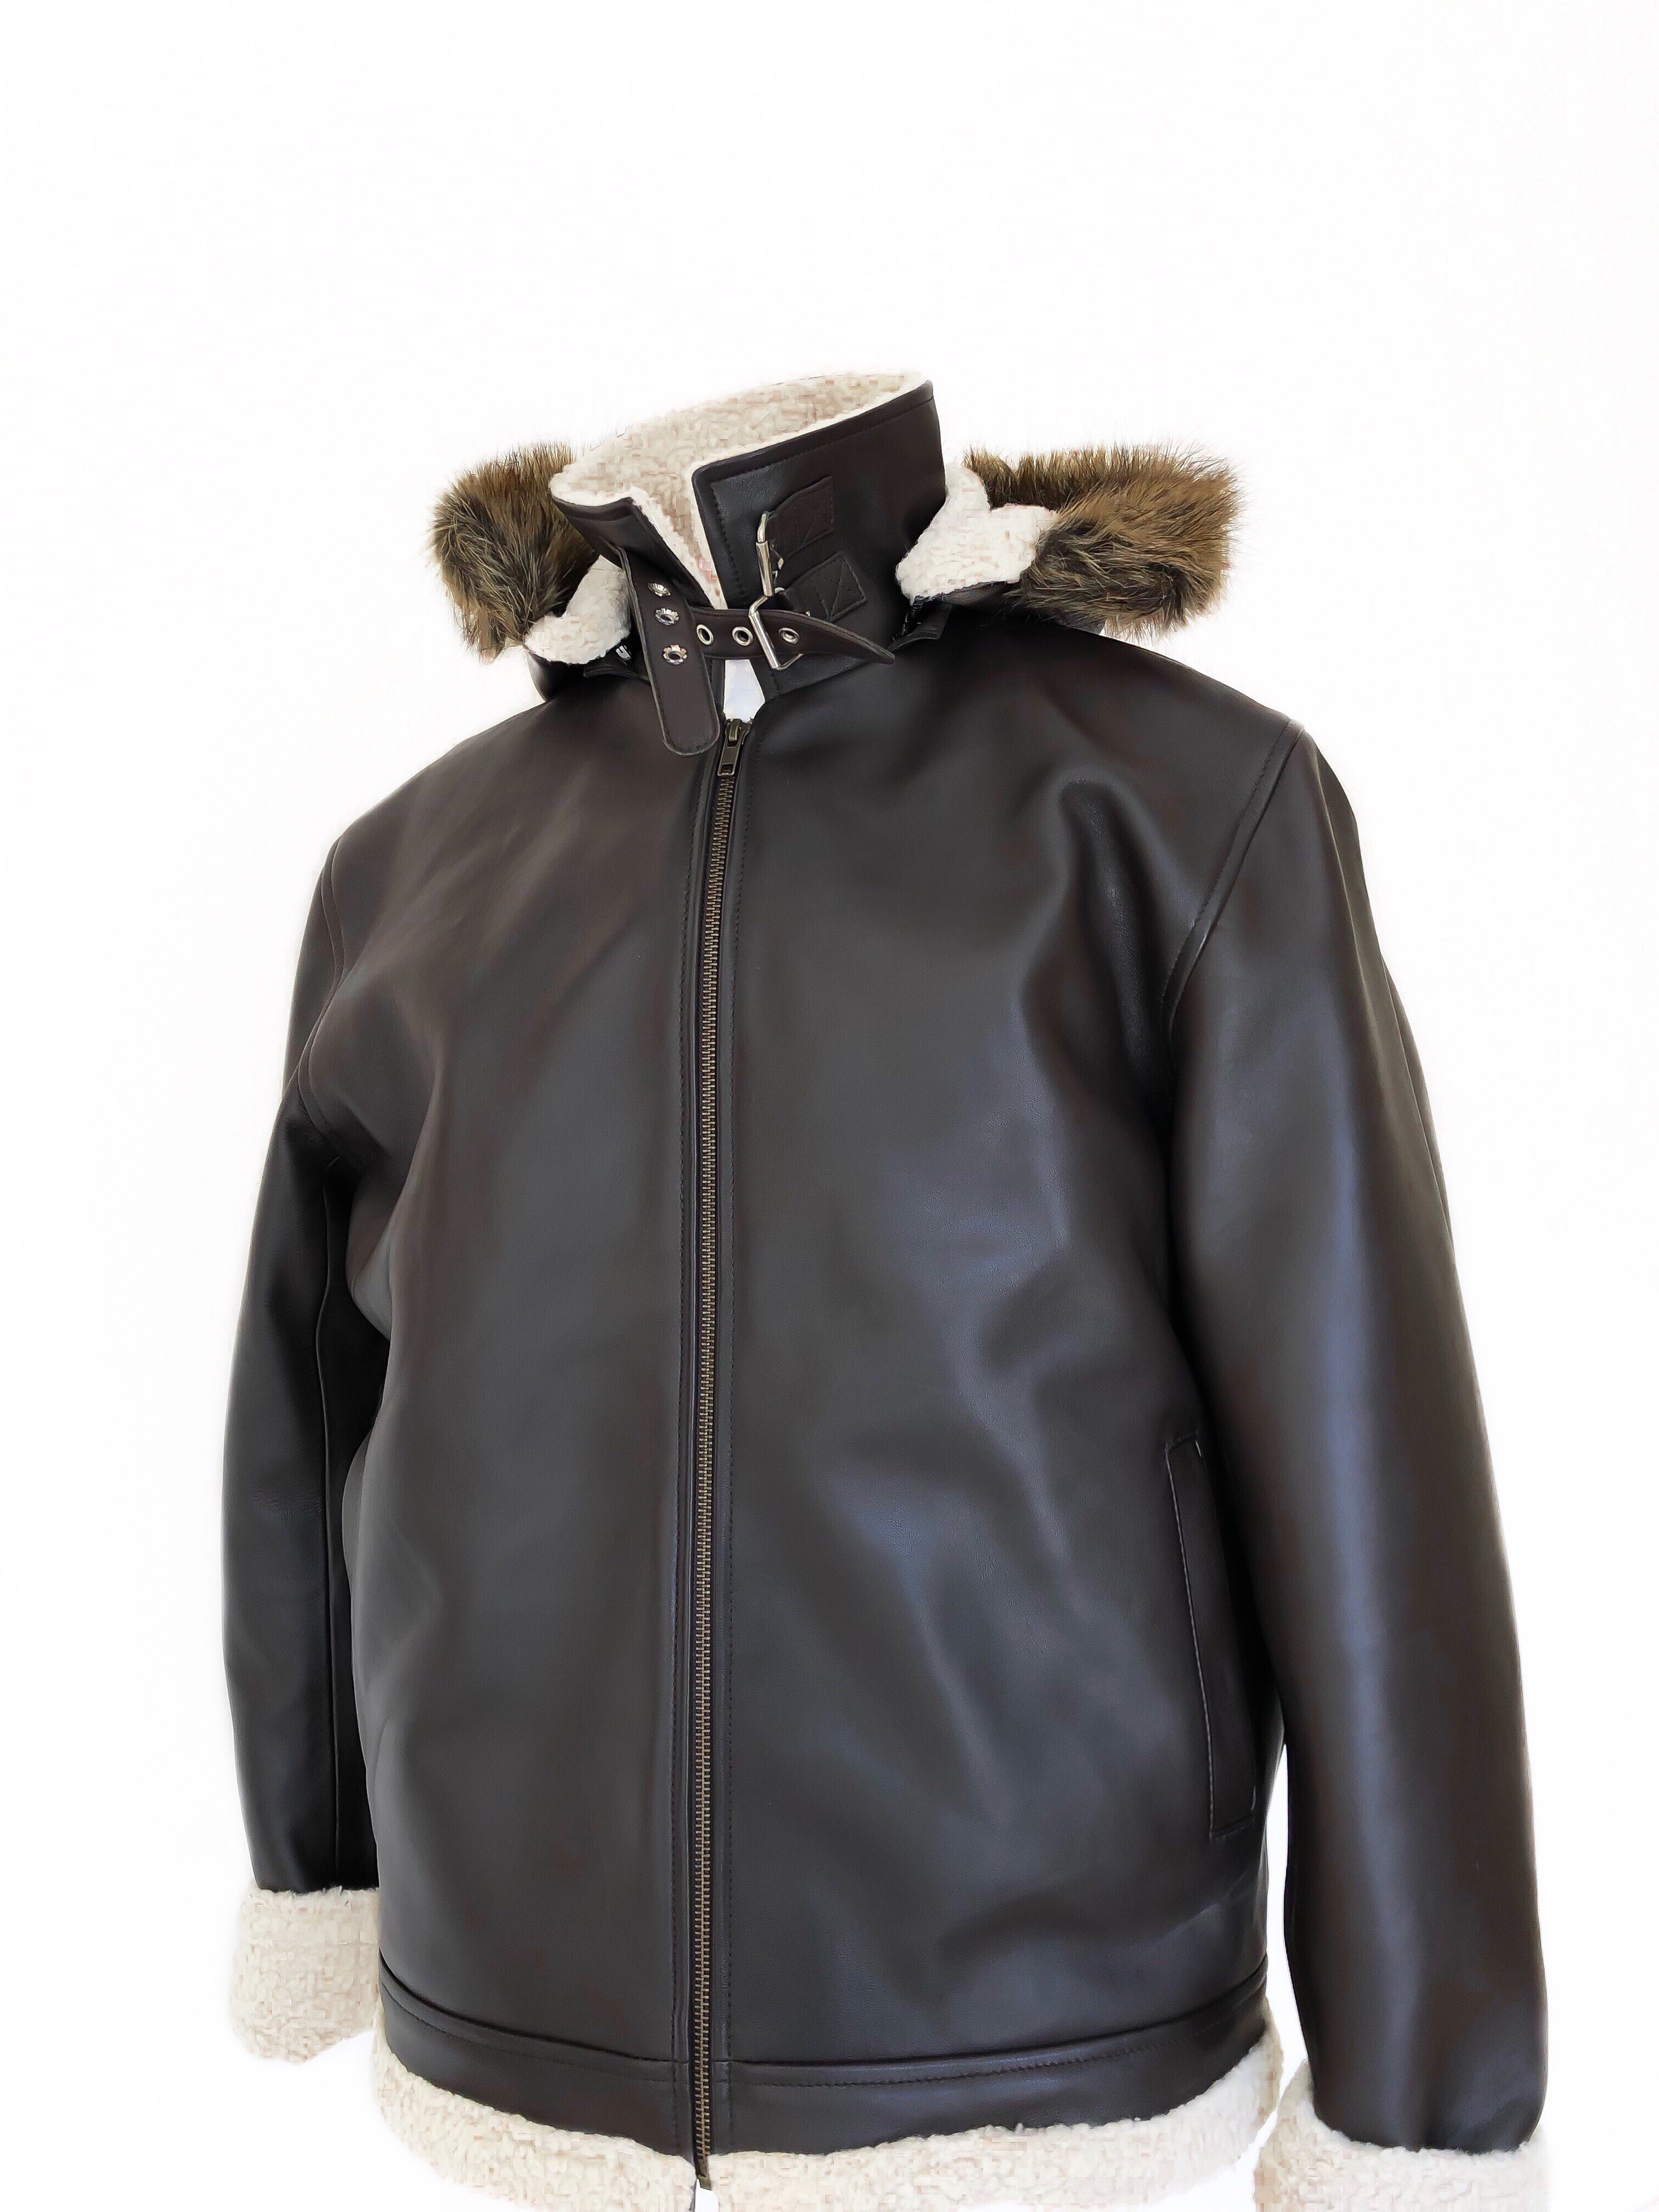 Alaska Leather Jacket - Tom Voyager SA